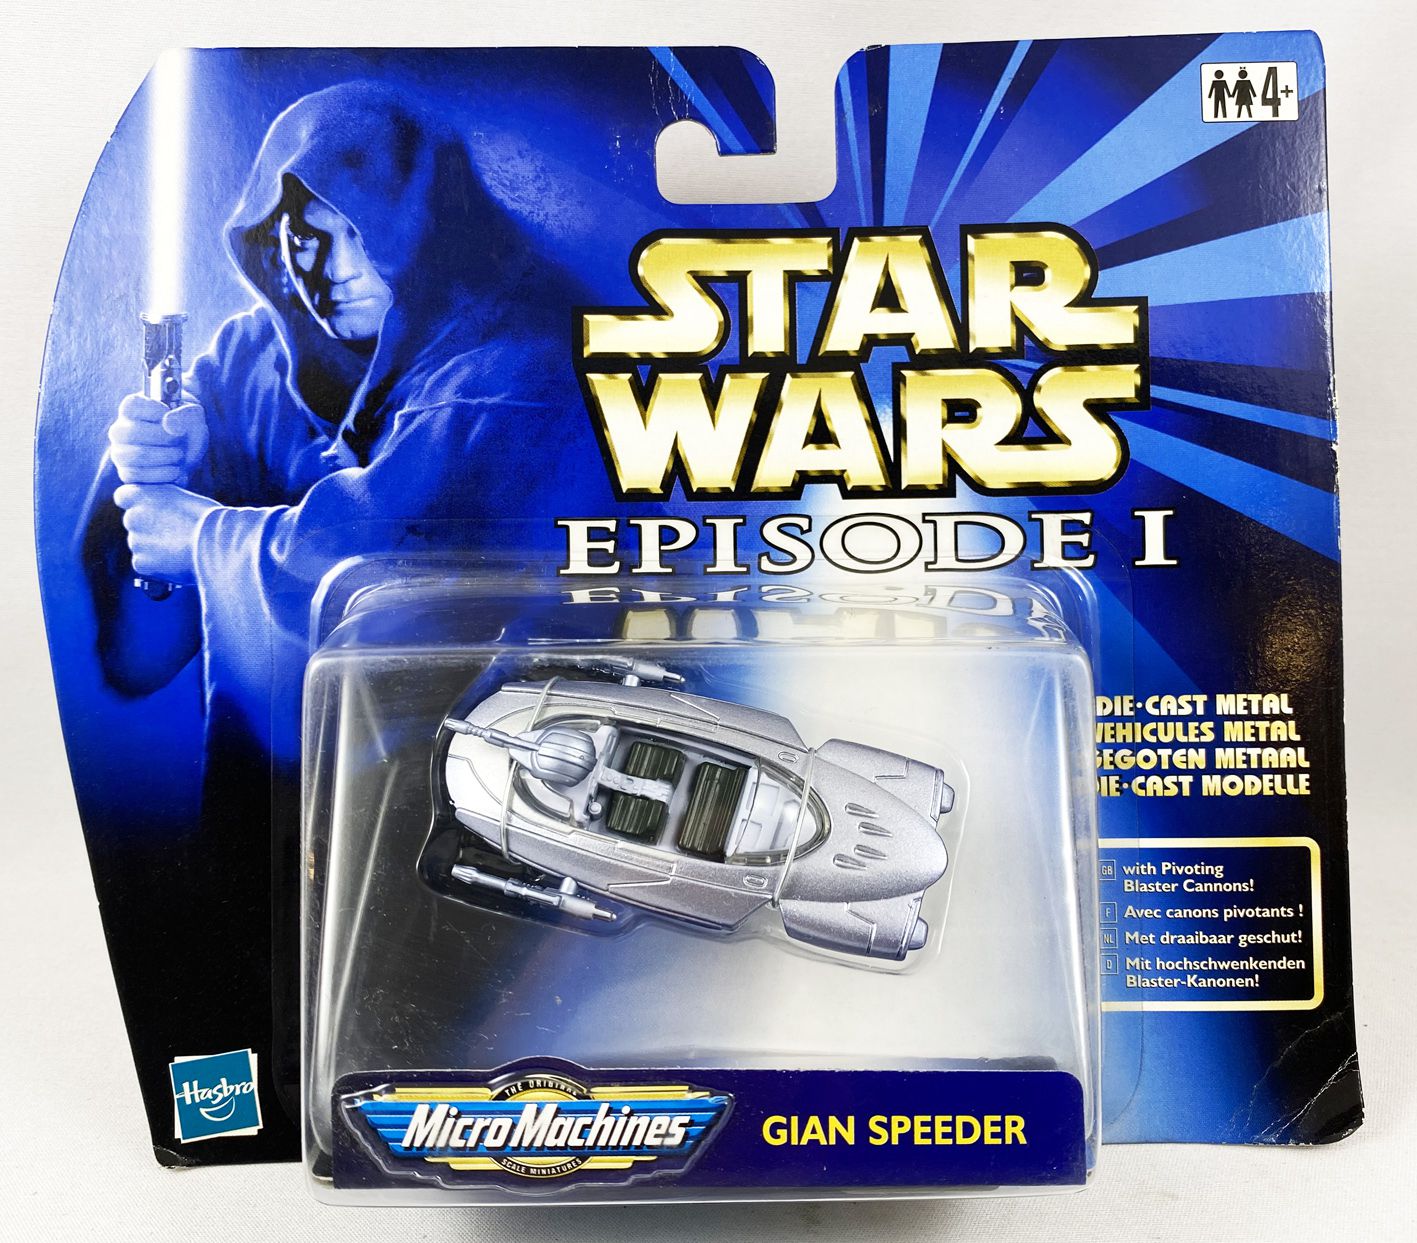 Star Wars Landspeeder Die-Cast Titanium Vehicle MIB Galoob Micro Machines Toy! 